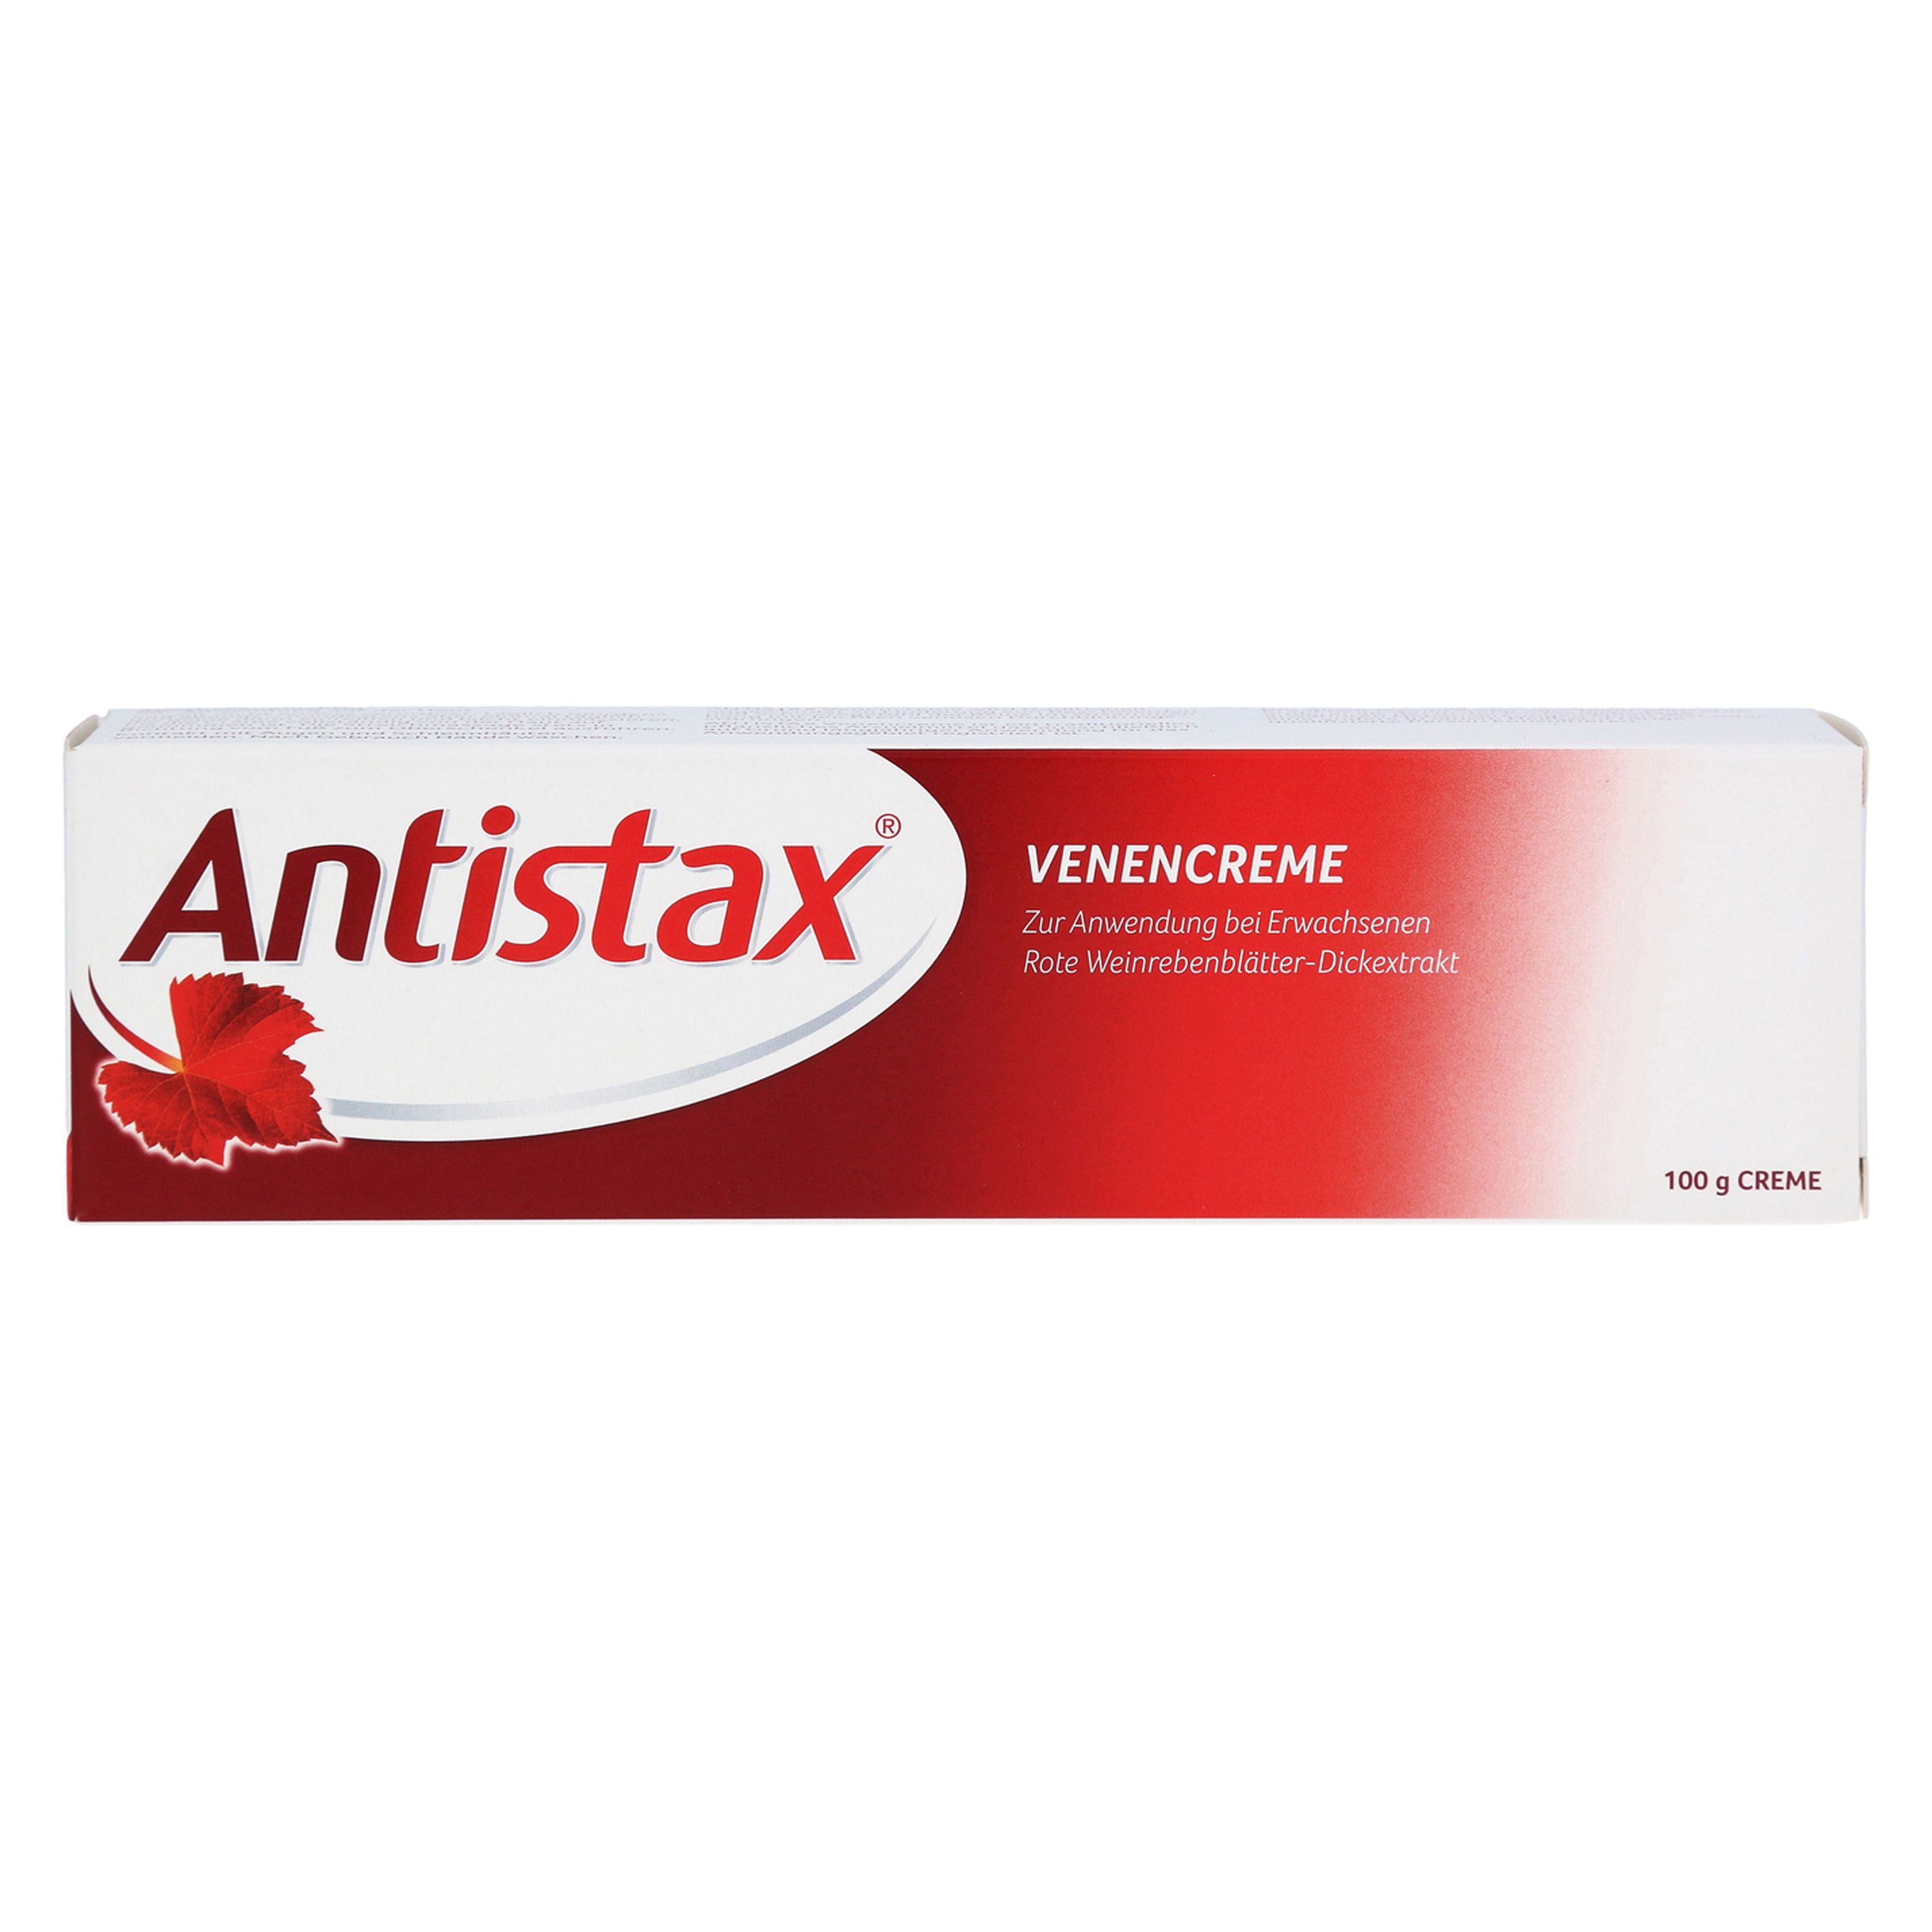 Antistax Venencreme belebt müde, schwere Beine - Jetzt 10% Rabatt mit dem Code stada2024 sparen*